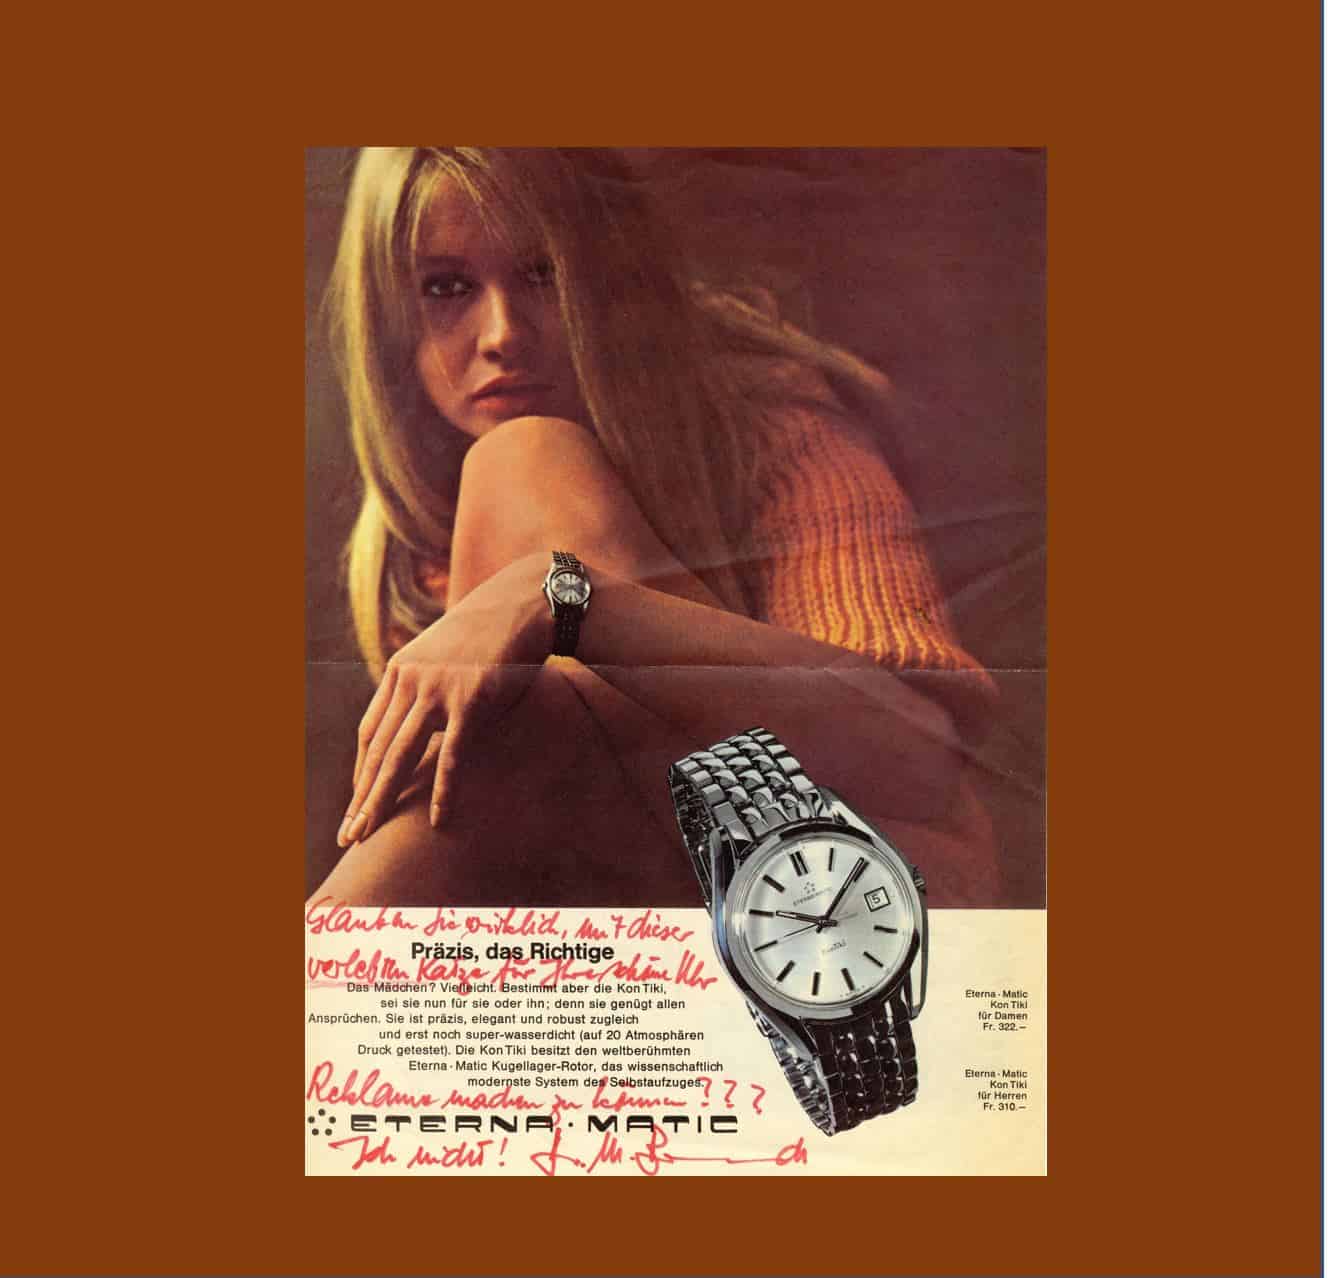 Eterna KonTiki Vintage und die WerbungEterna KonTiki: Mit dieser verlebten Katze Reklame für eine schöne Uhr machen ?